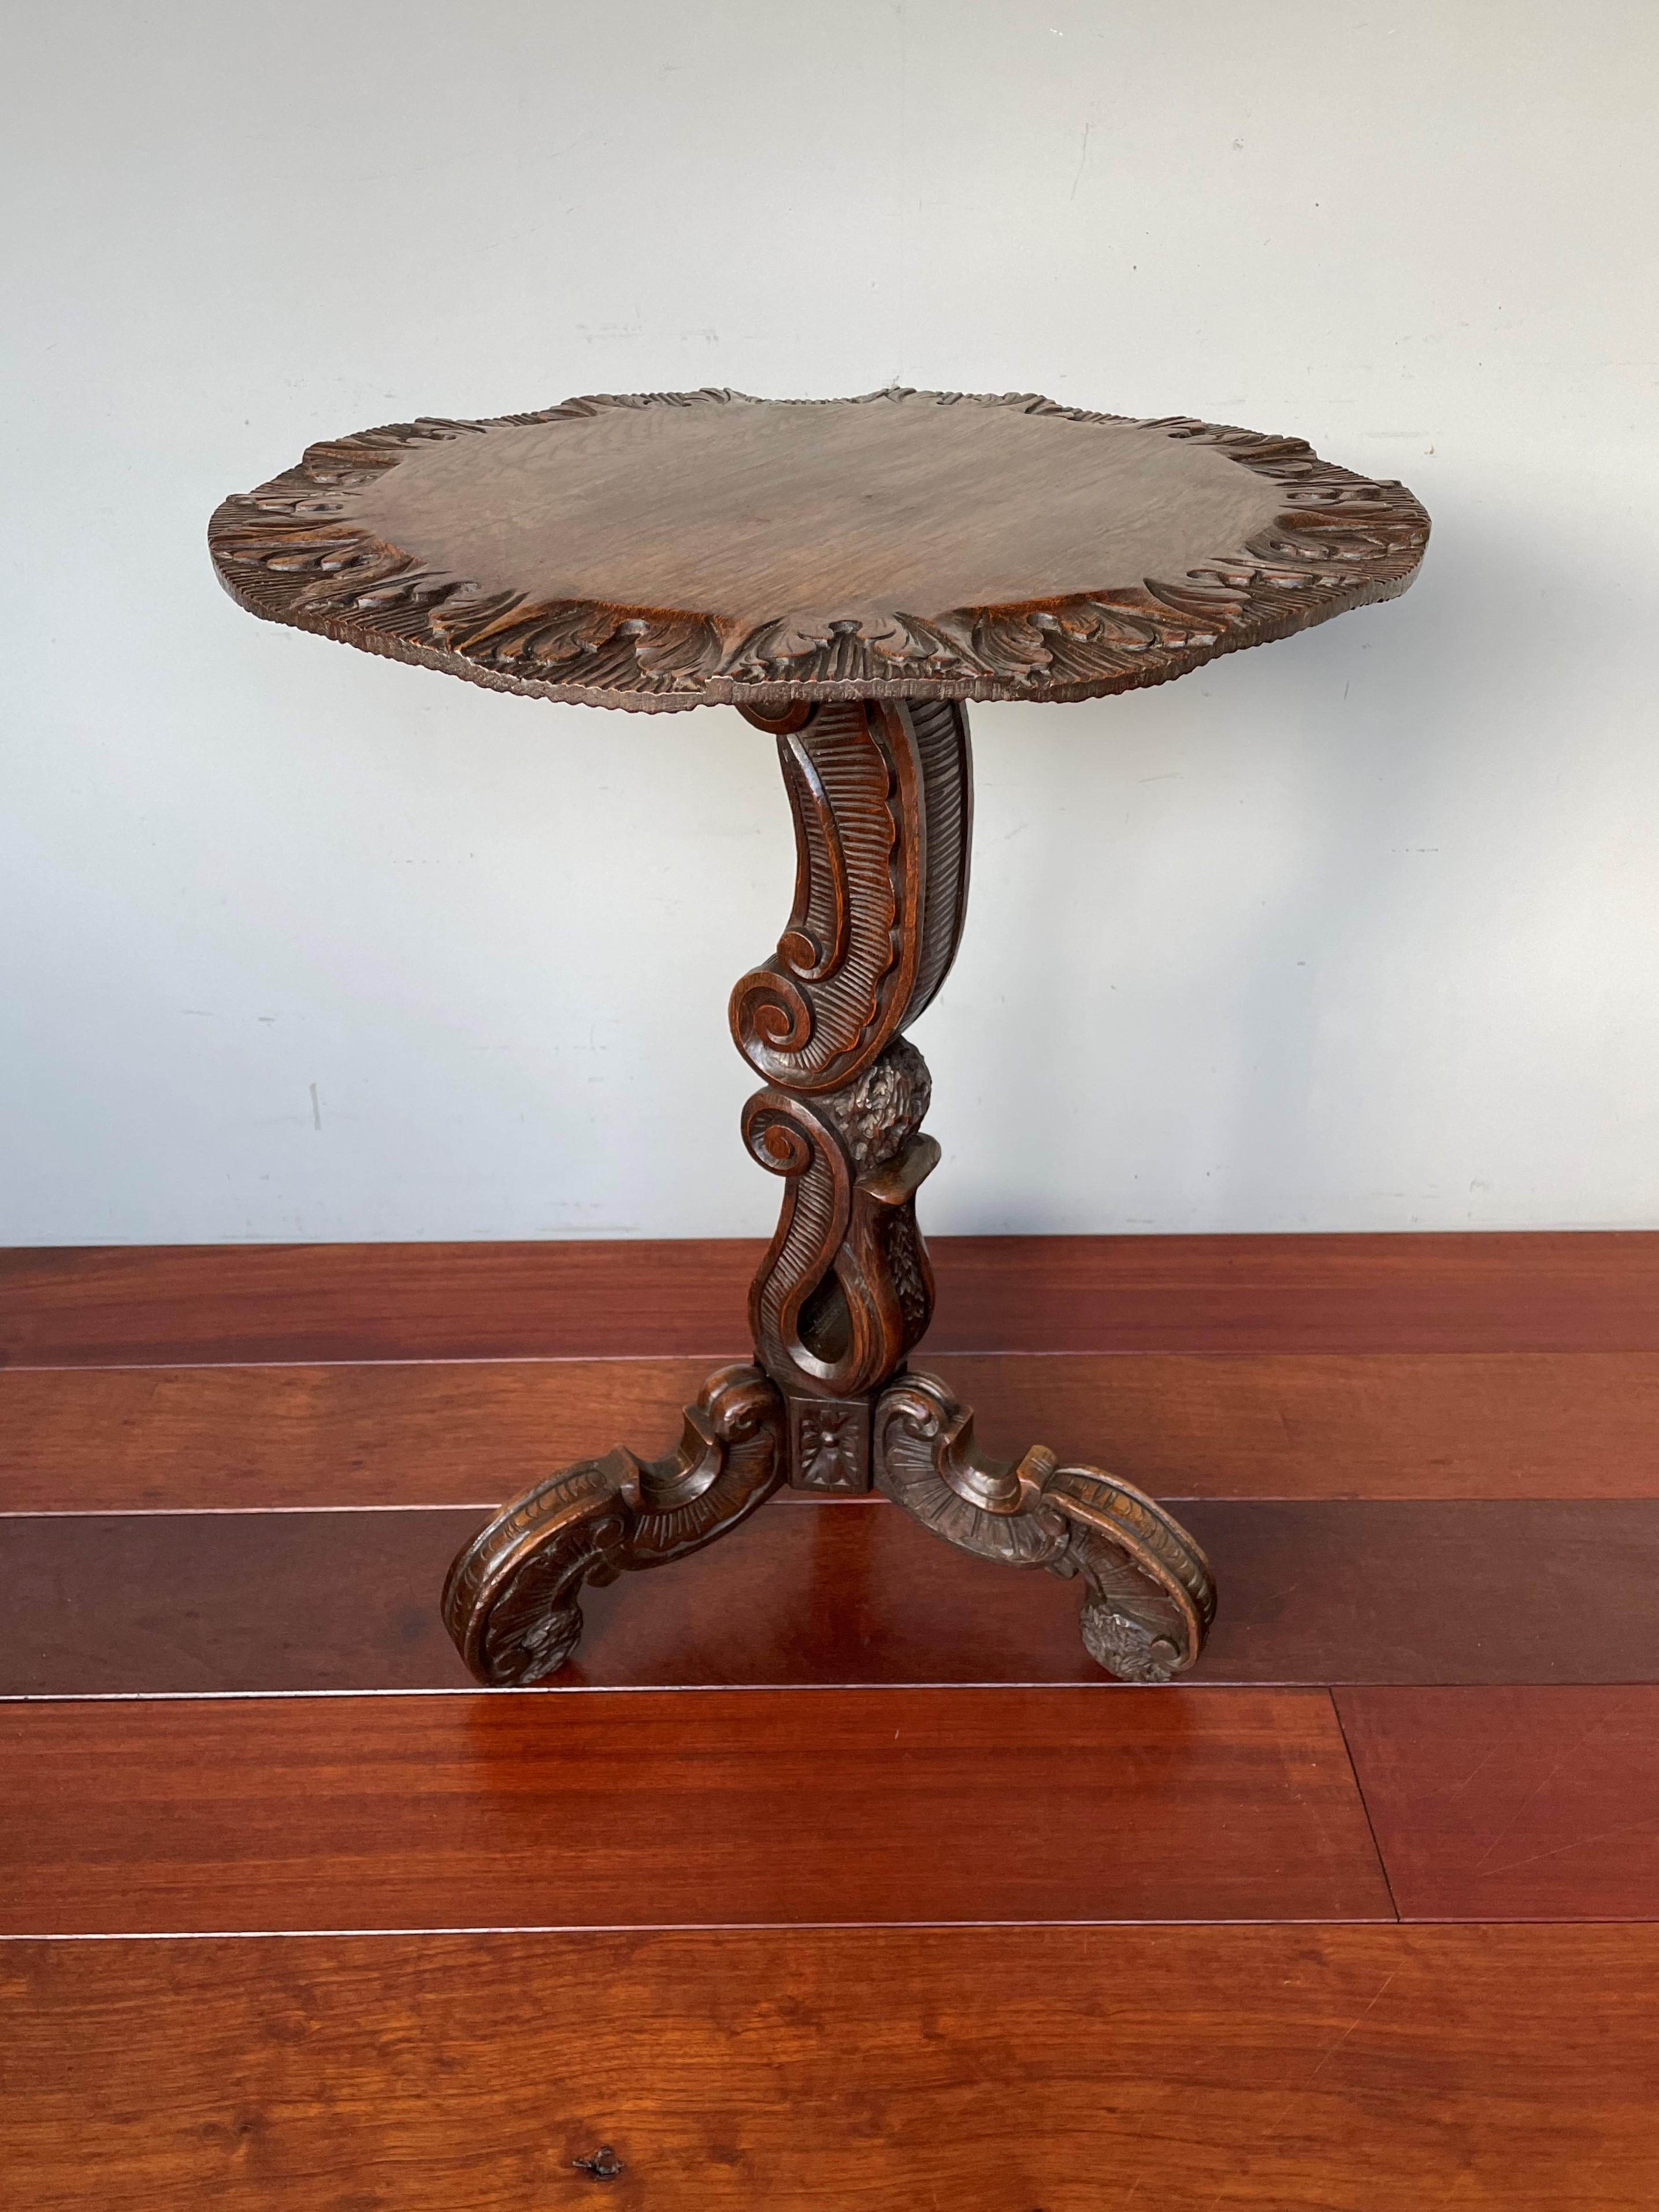 Table de fabrication remarquable et en excellent état datant d'environ 1850

Le style rococo tire son nom du mot français 